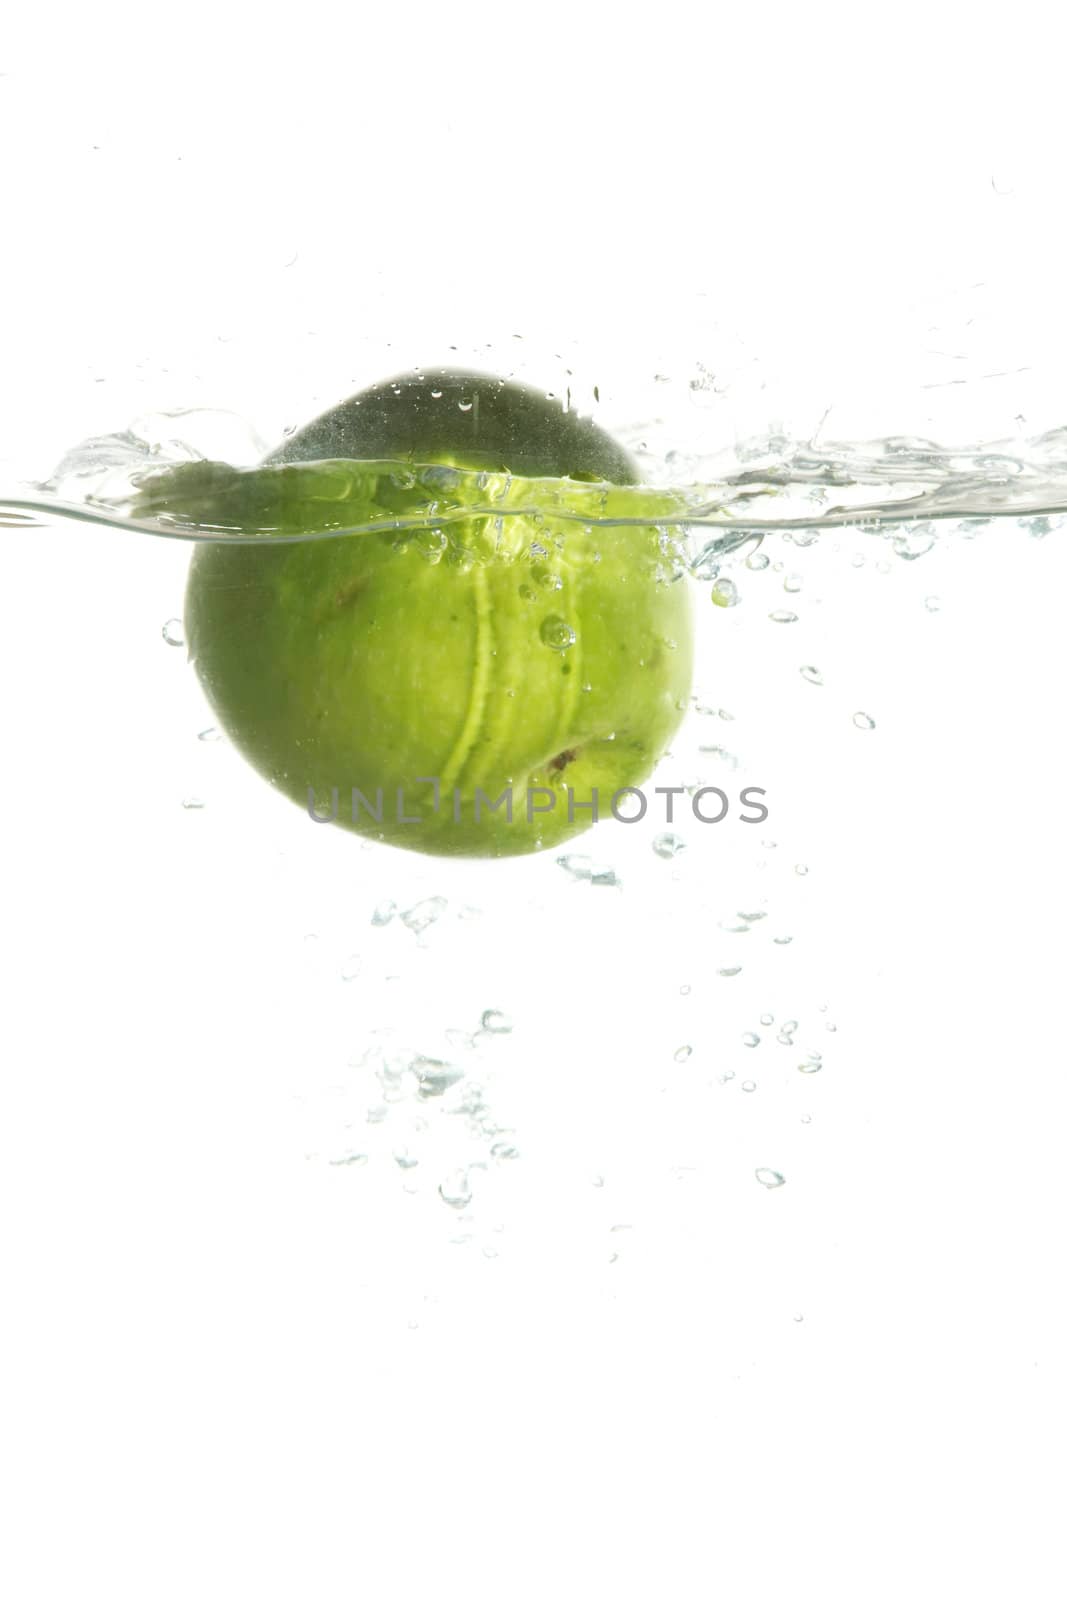 Green apple in water by velkol